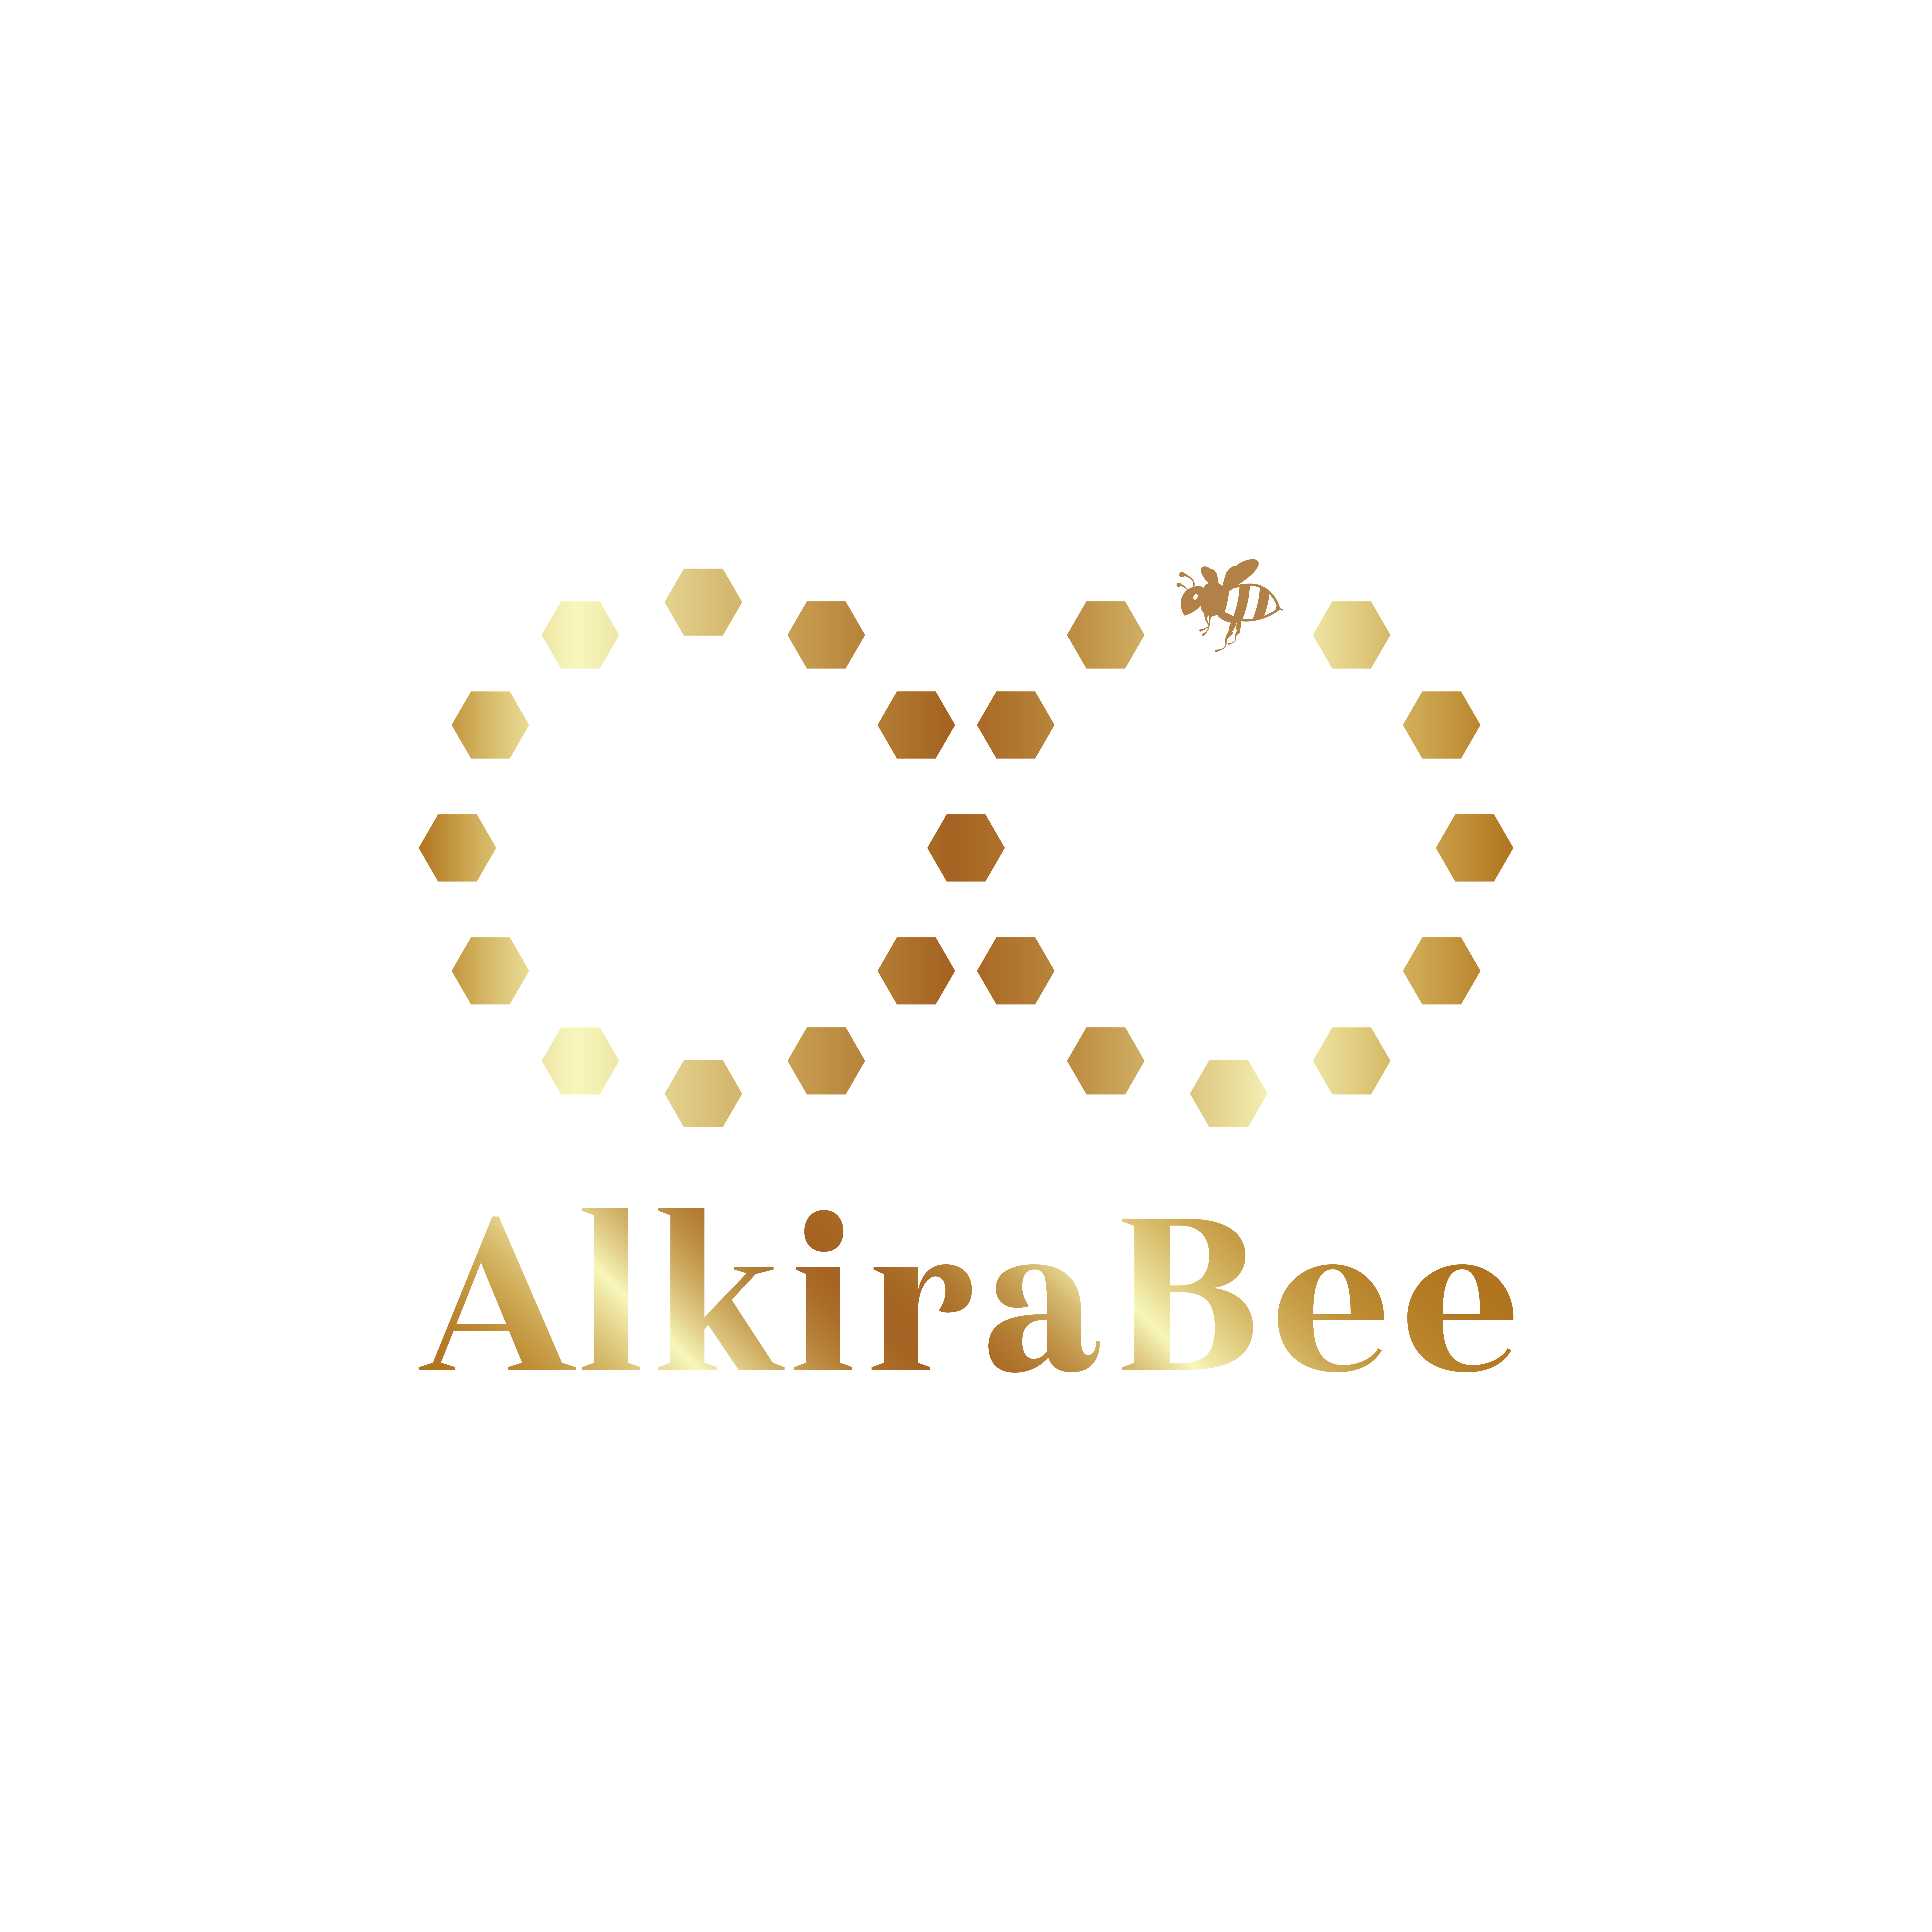 AlkiraBee